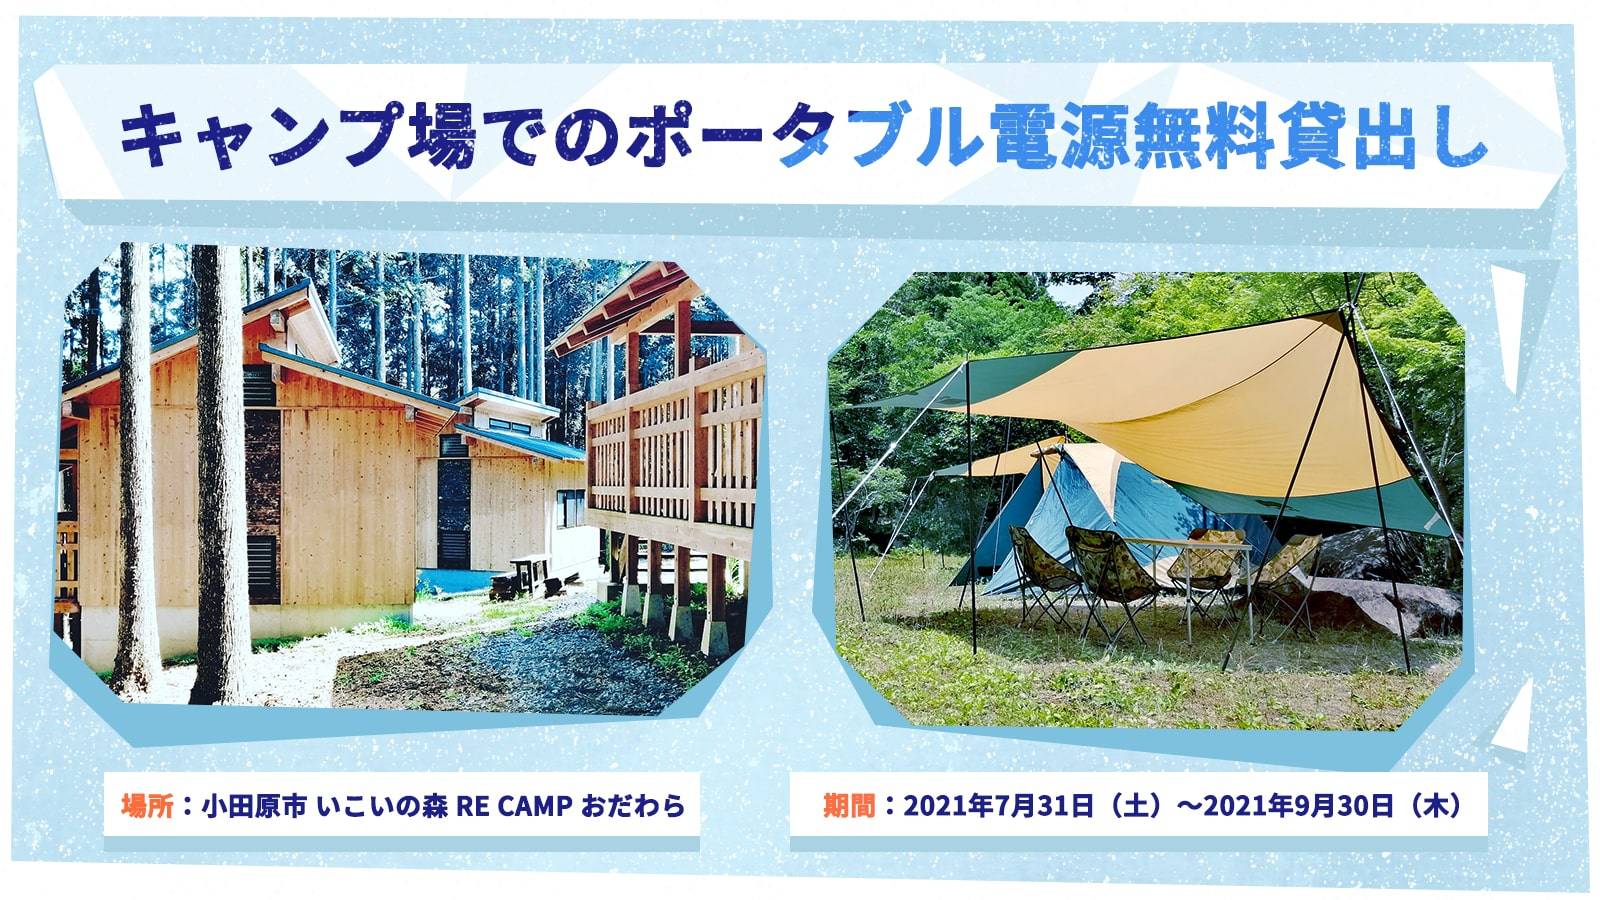 キャンプ場でのポータブル電源無料貸出